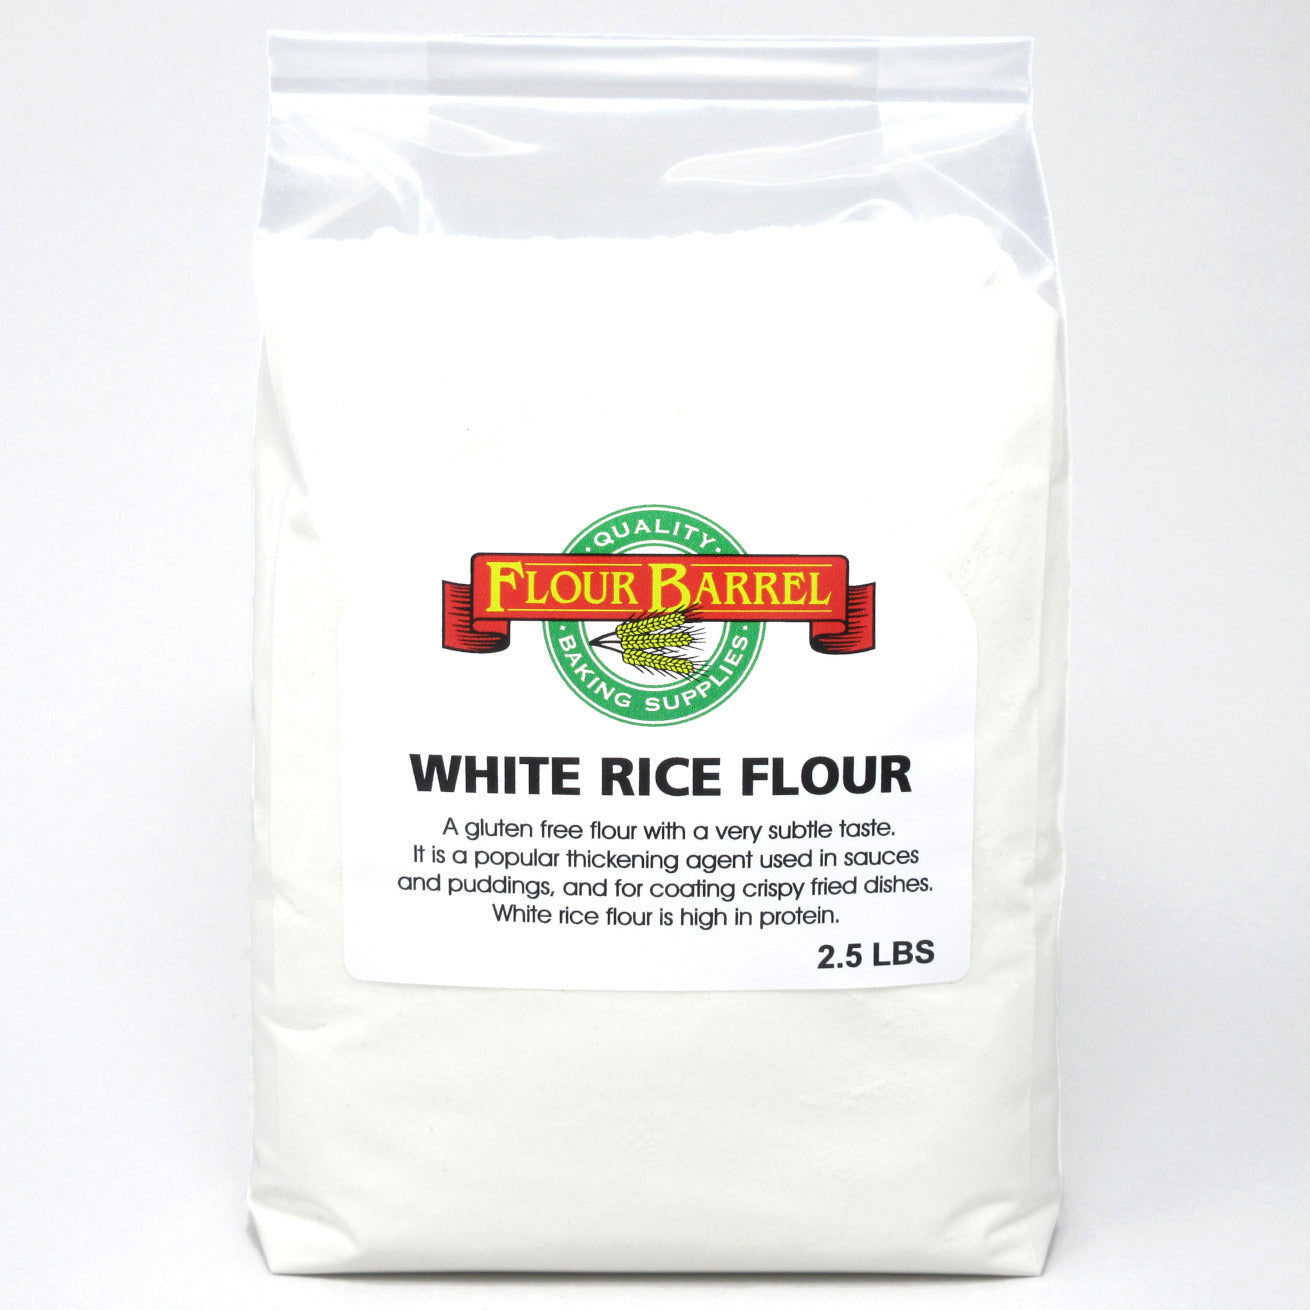 Flour Barrel product image - White Rice Flour